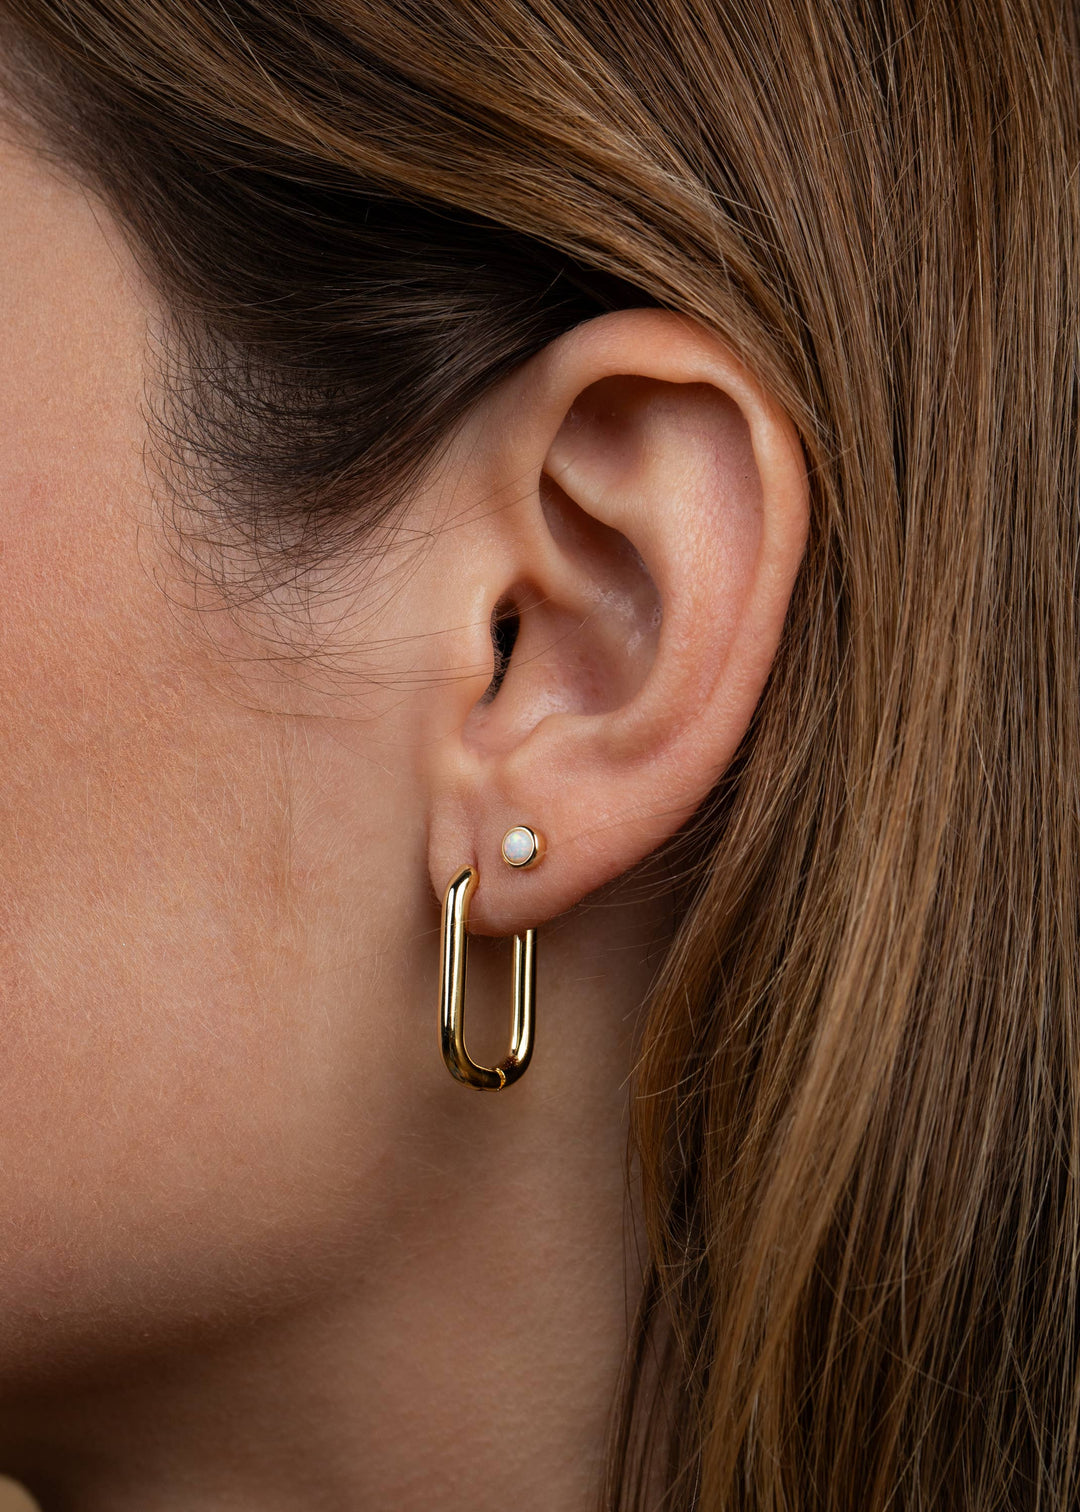 JaxKelly Earrings Simple Stud - White Opal- Earring